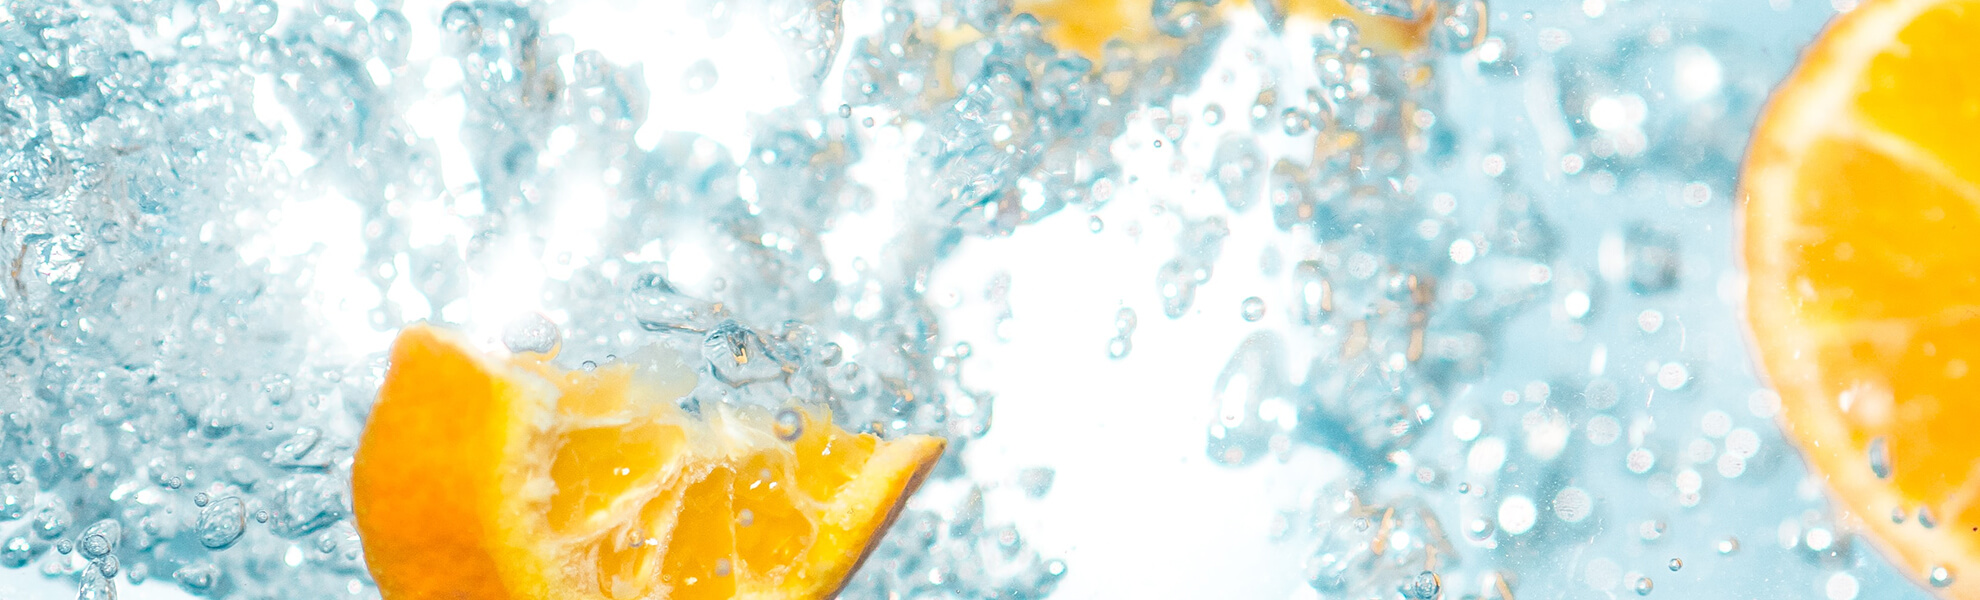 Aguas con sabor y zumos de frutas naturales, la alternativa para estar bien hidratados.